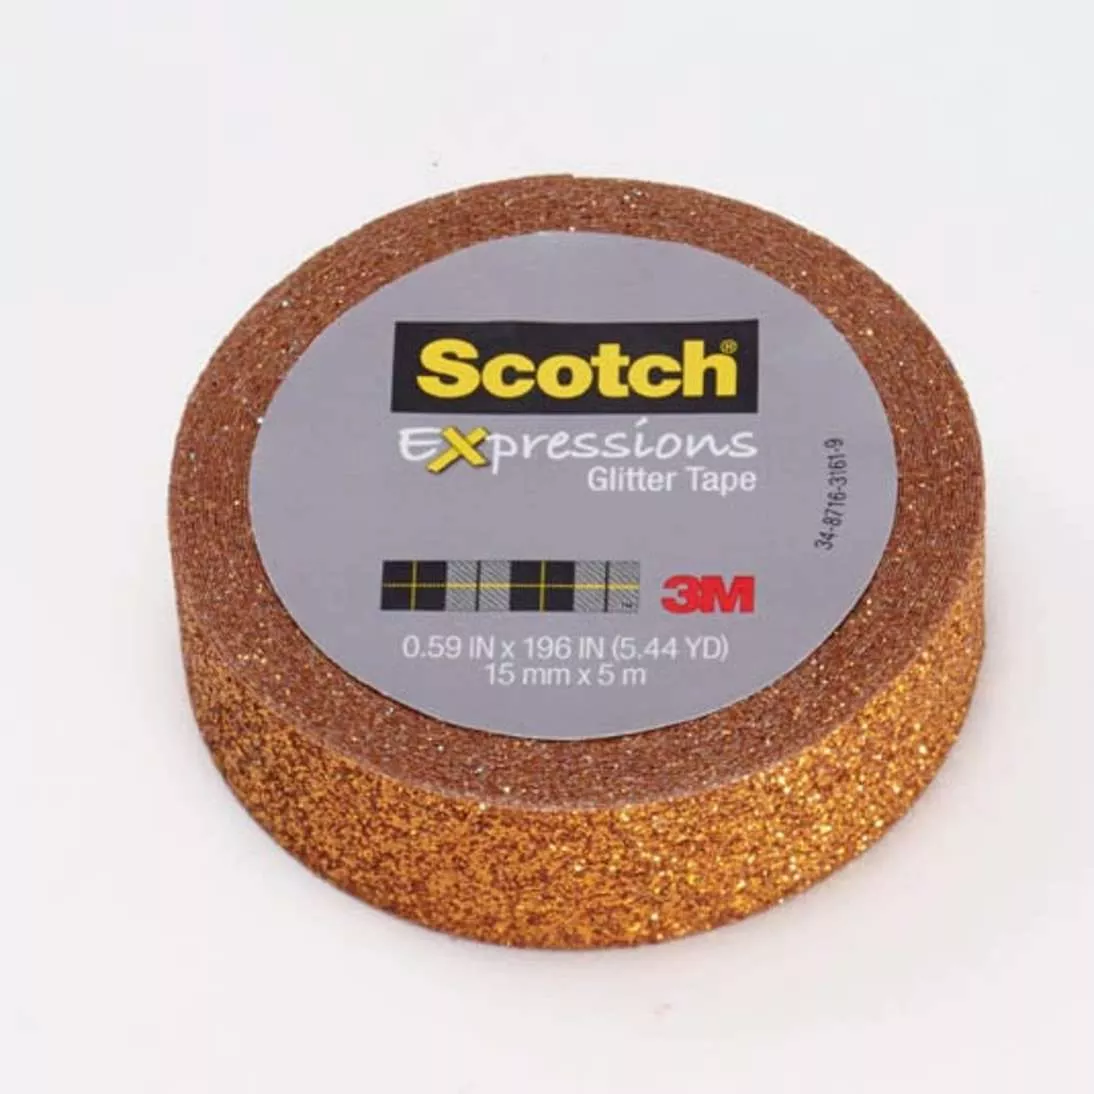 Scotch® Expressions Glitter Tape C514-ORG, .59 in x 196 in (15 mm x 5 m)
Bright Orange Glitter